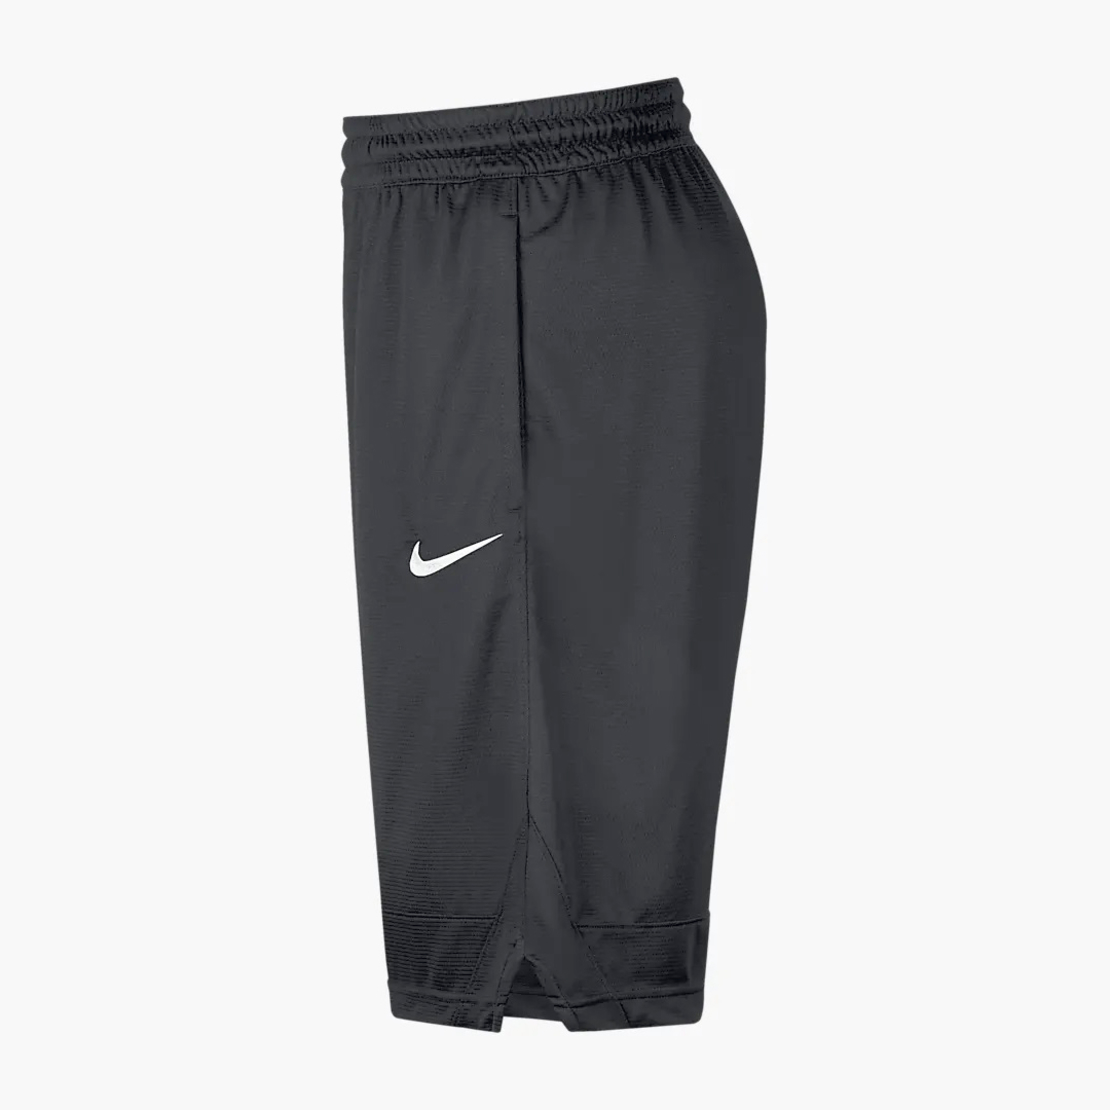 שורט כדורסל נייק גברים | Nike Dri-FIT Icon Basketball Shorts